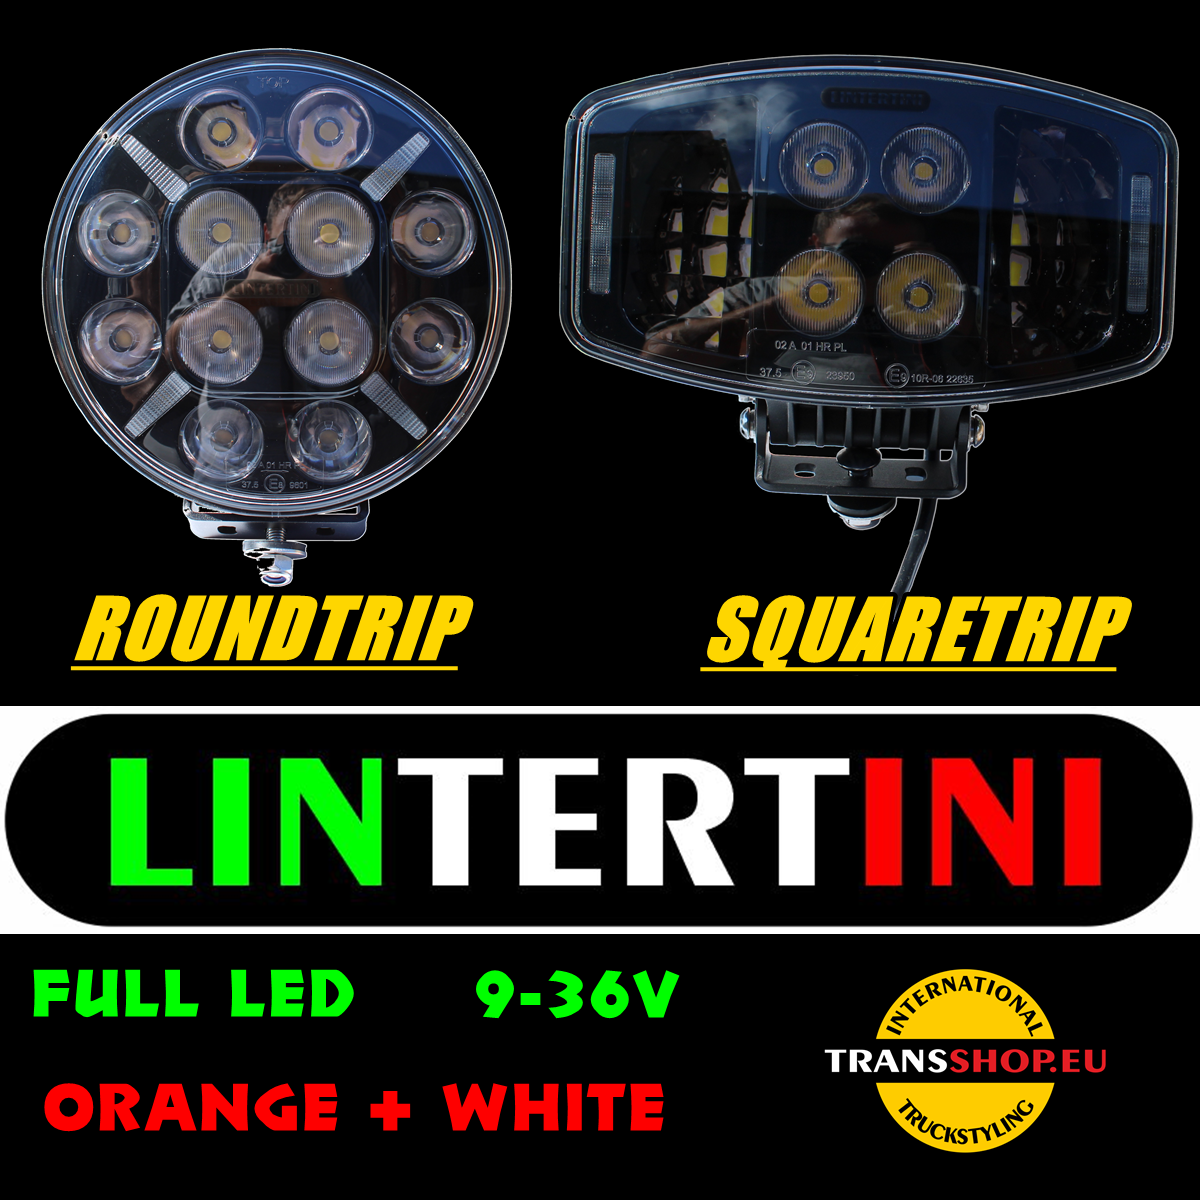 Novo iz Lintertinija - dugotrajne LED halogene s narančastom pozicijom.